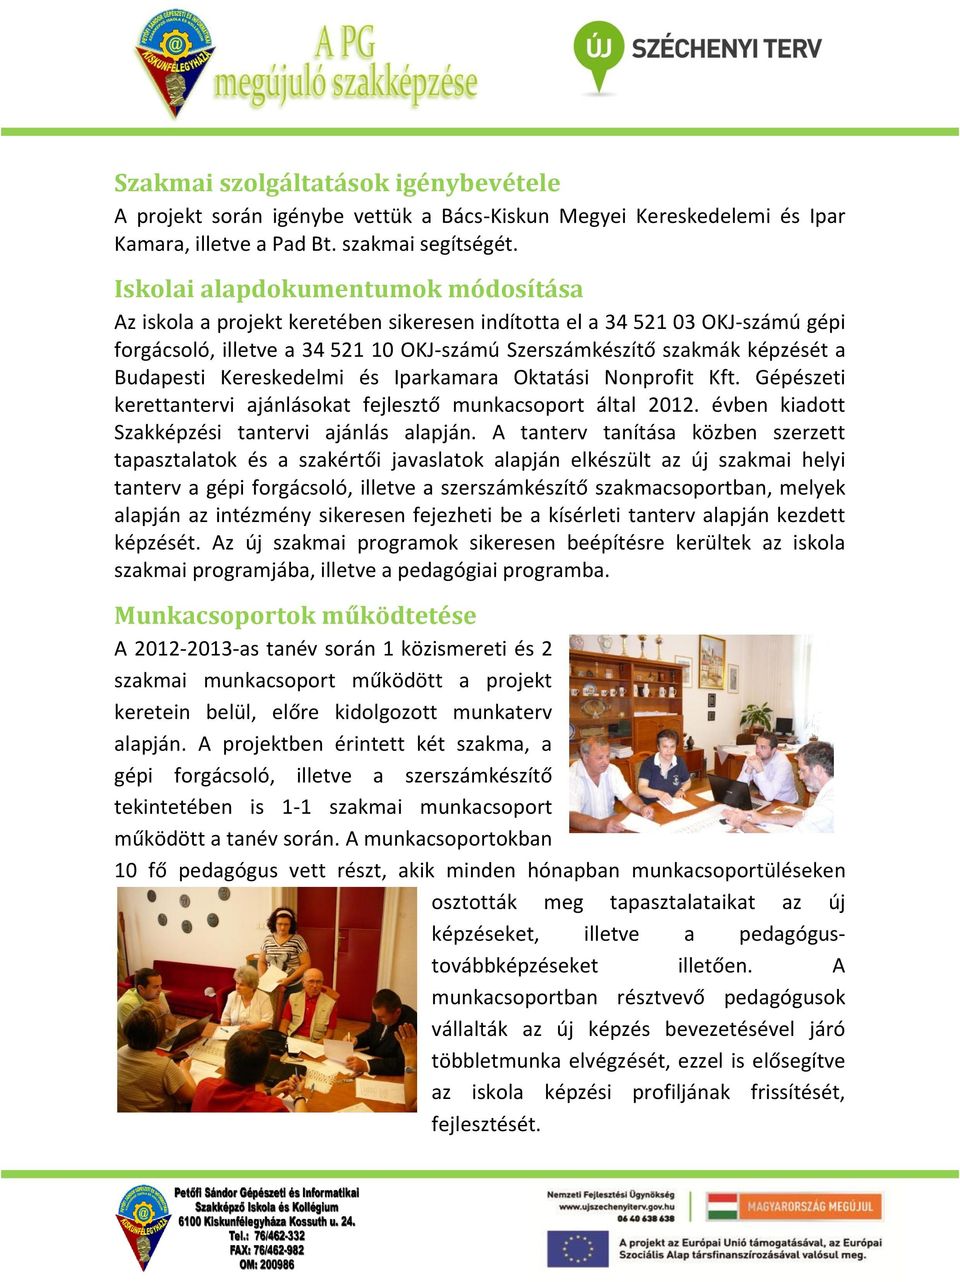 Budapesti Kereskedelmi és Iparkamara Oktatási Nonprofit Kft. Gépészeti kerettantervi ajánlásokat fejlesztő munkacsoport által 2012. évben kiadott Szakképzési tantervi ajánlás alapján.